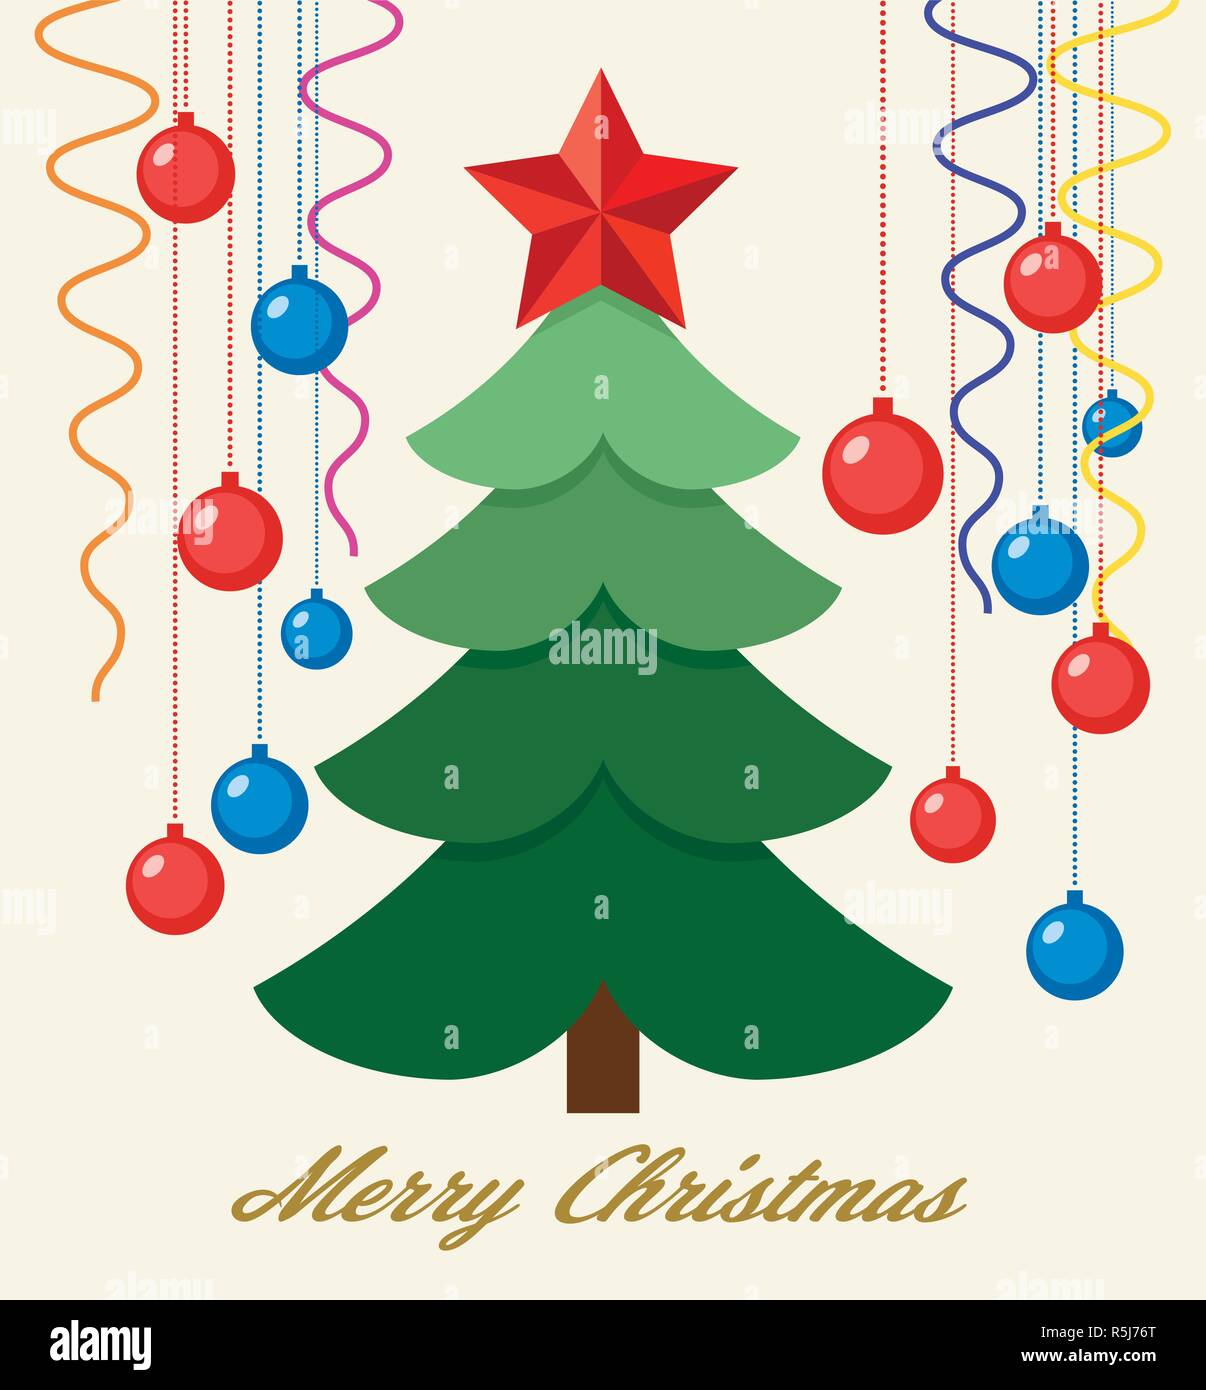 Vektor Weihnachten Hintergrund Fur Grusskarten Mit Gruner Baum Red Star Weihnachtskugeln Und Bander Frohe Weihnachten Text Ist Unten Stock Vektorgrafik Alamy